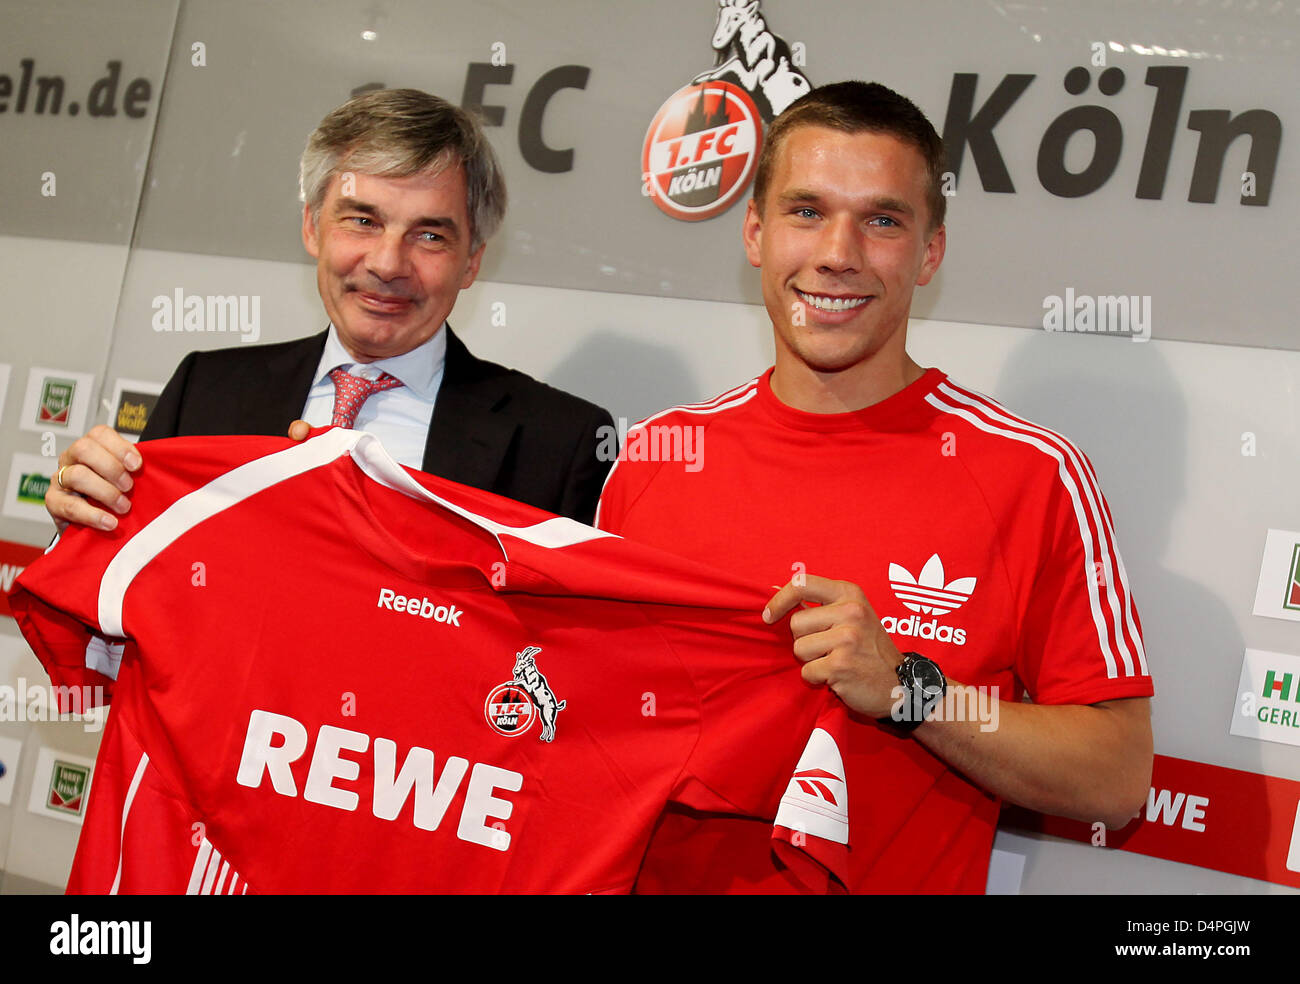 El futbolista alemán Lukas Podolski (R) presenta su nueva jersey junto al  director Michael Maier durante una conferencia de prensa de la Bundesliga  alemana de fútbol FC Colonia en Colonia, Alemania, 24